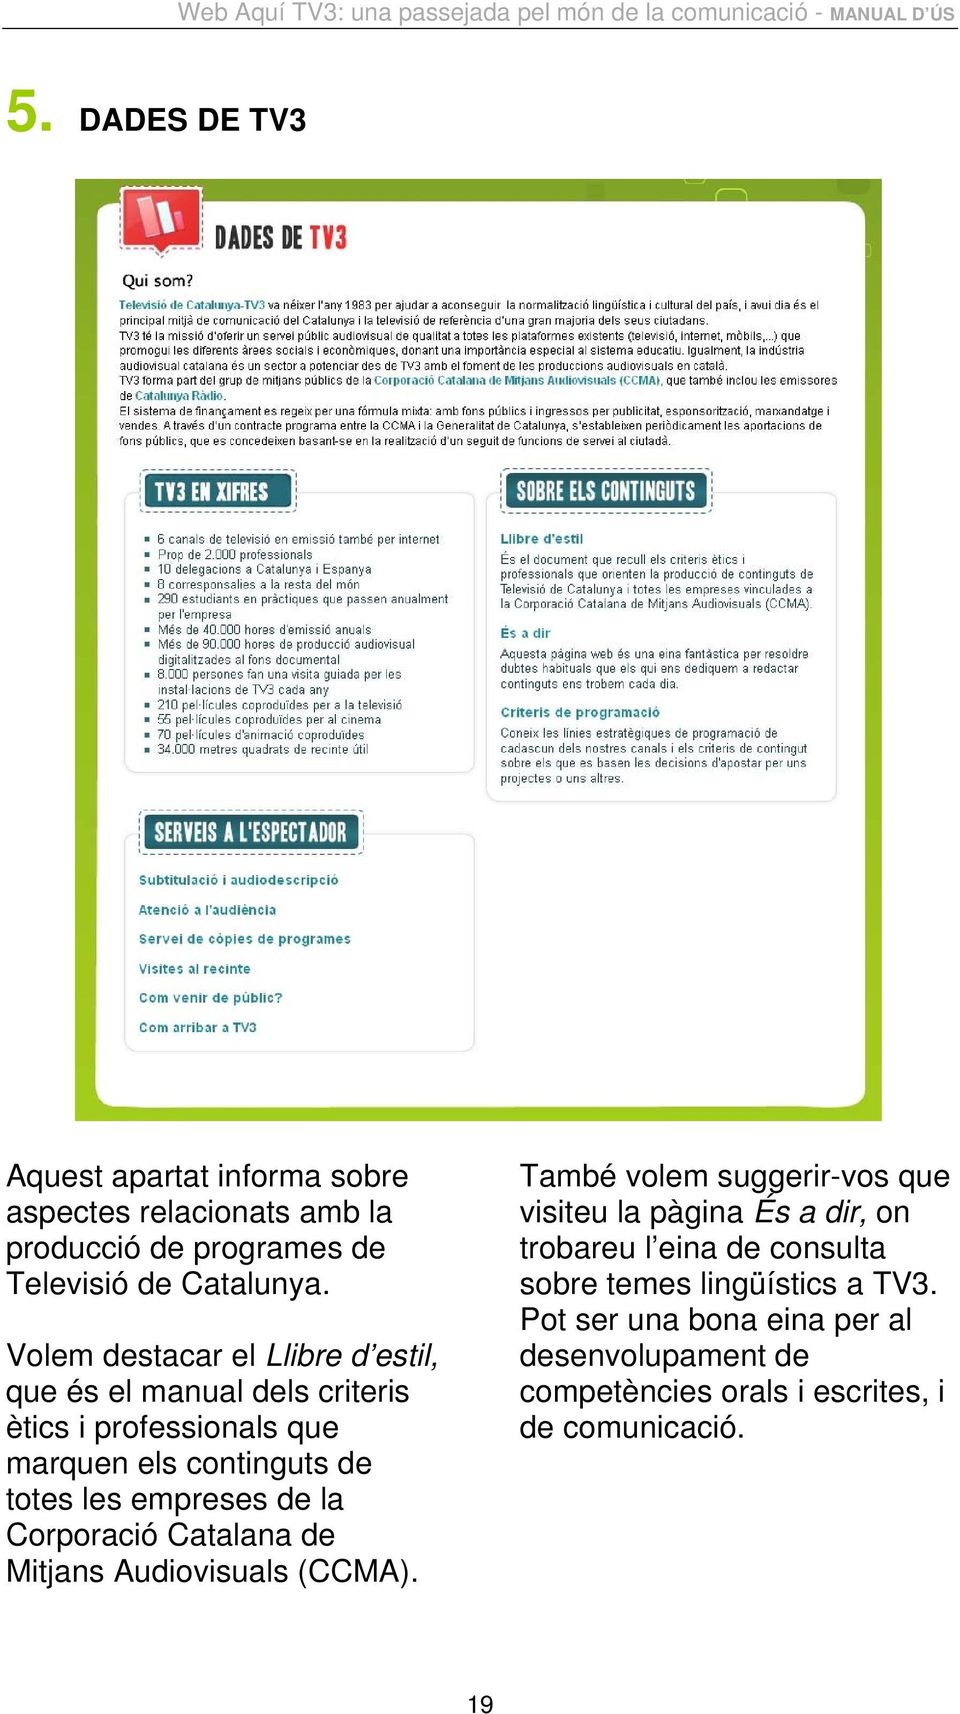 empreses de la Corporació Catalana de Mitjans Audiovisuals (CCMA).